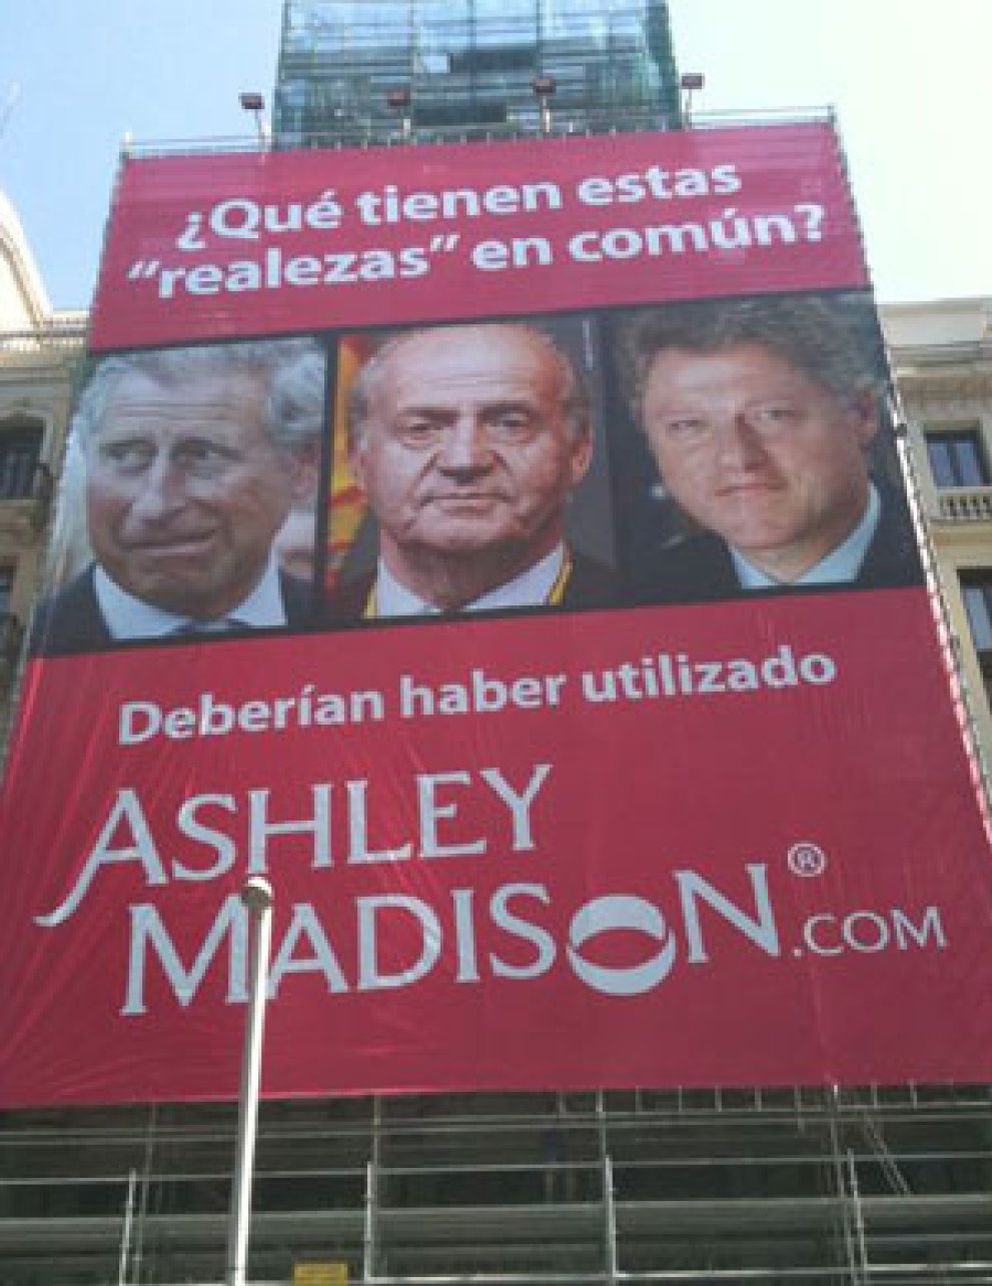 Foto: La empresa que promueve la infidelidad utiliza al Rey Juan Carlos como reclamo publicitario